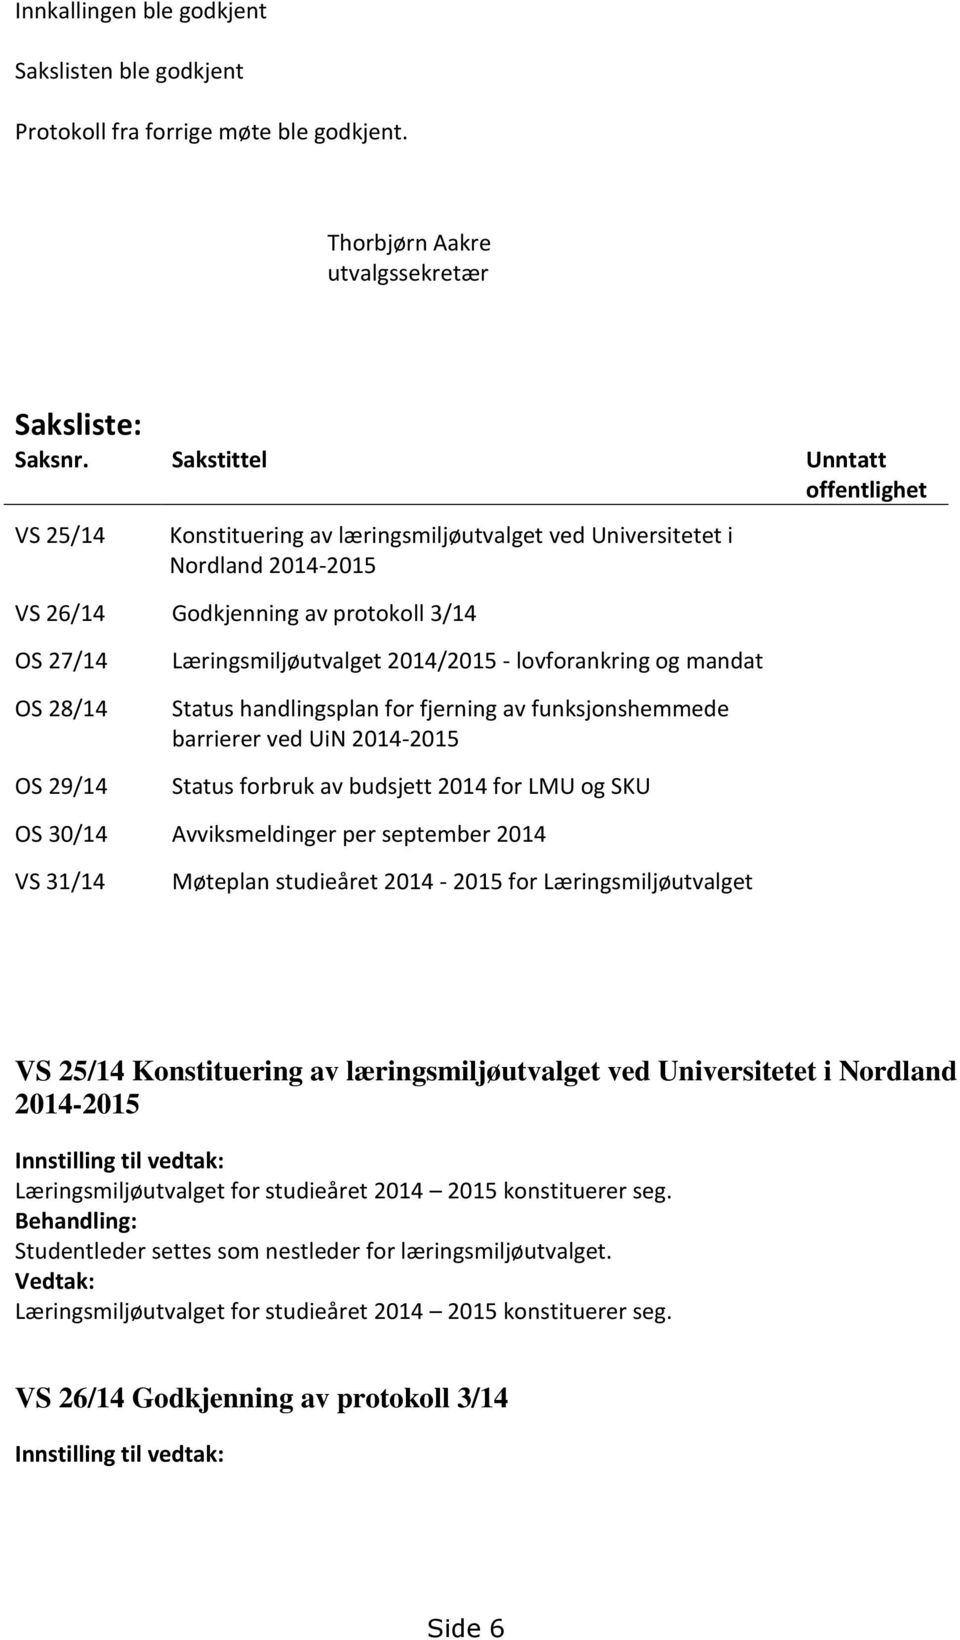 Læringsmiljøutvalget 2014/2015 - lovforankring og mandat Status handlingsplan for fjerning av funksjonshemmede barrierer ved UiN 2014-2015 Status forbruk av budsjett 2014 for LMU og SKU OS 30/14